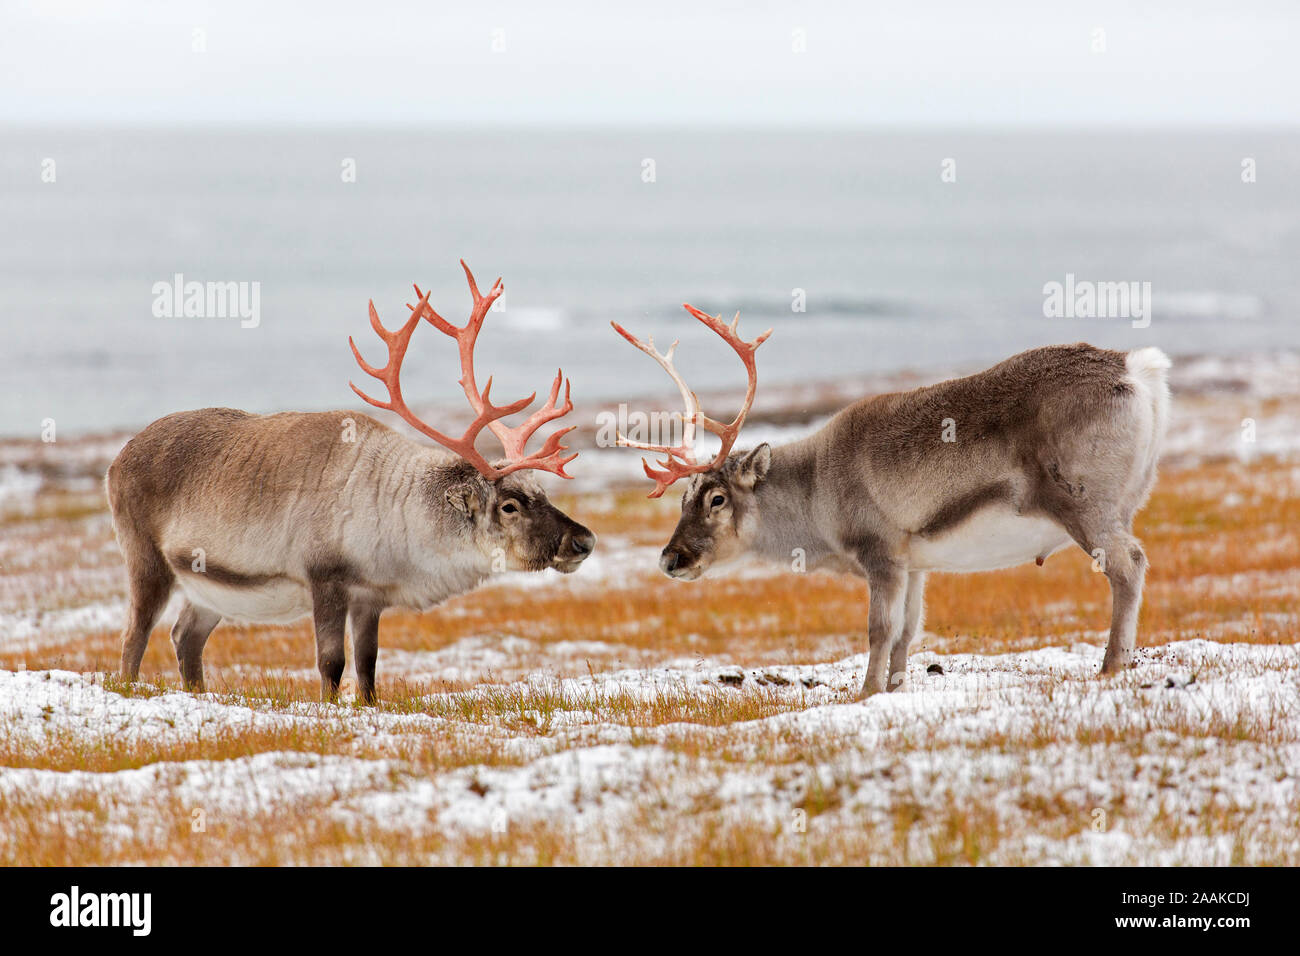 Deux renne du Svalbard (Rangifer tarandus platyrhynchus) hommes / bulls taille les uns les autres avant la bataille sur la toundra couvertes de neige en automne / fall, Norvège Banque D'Images